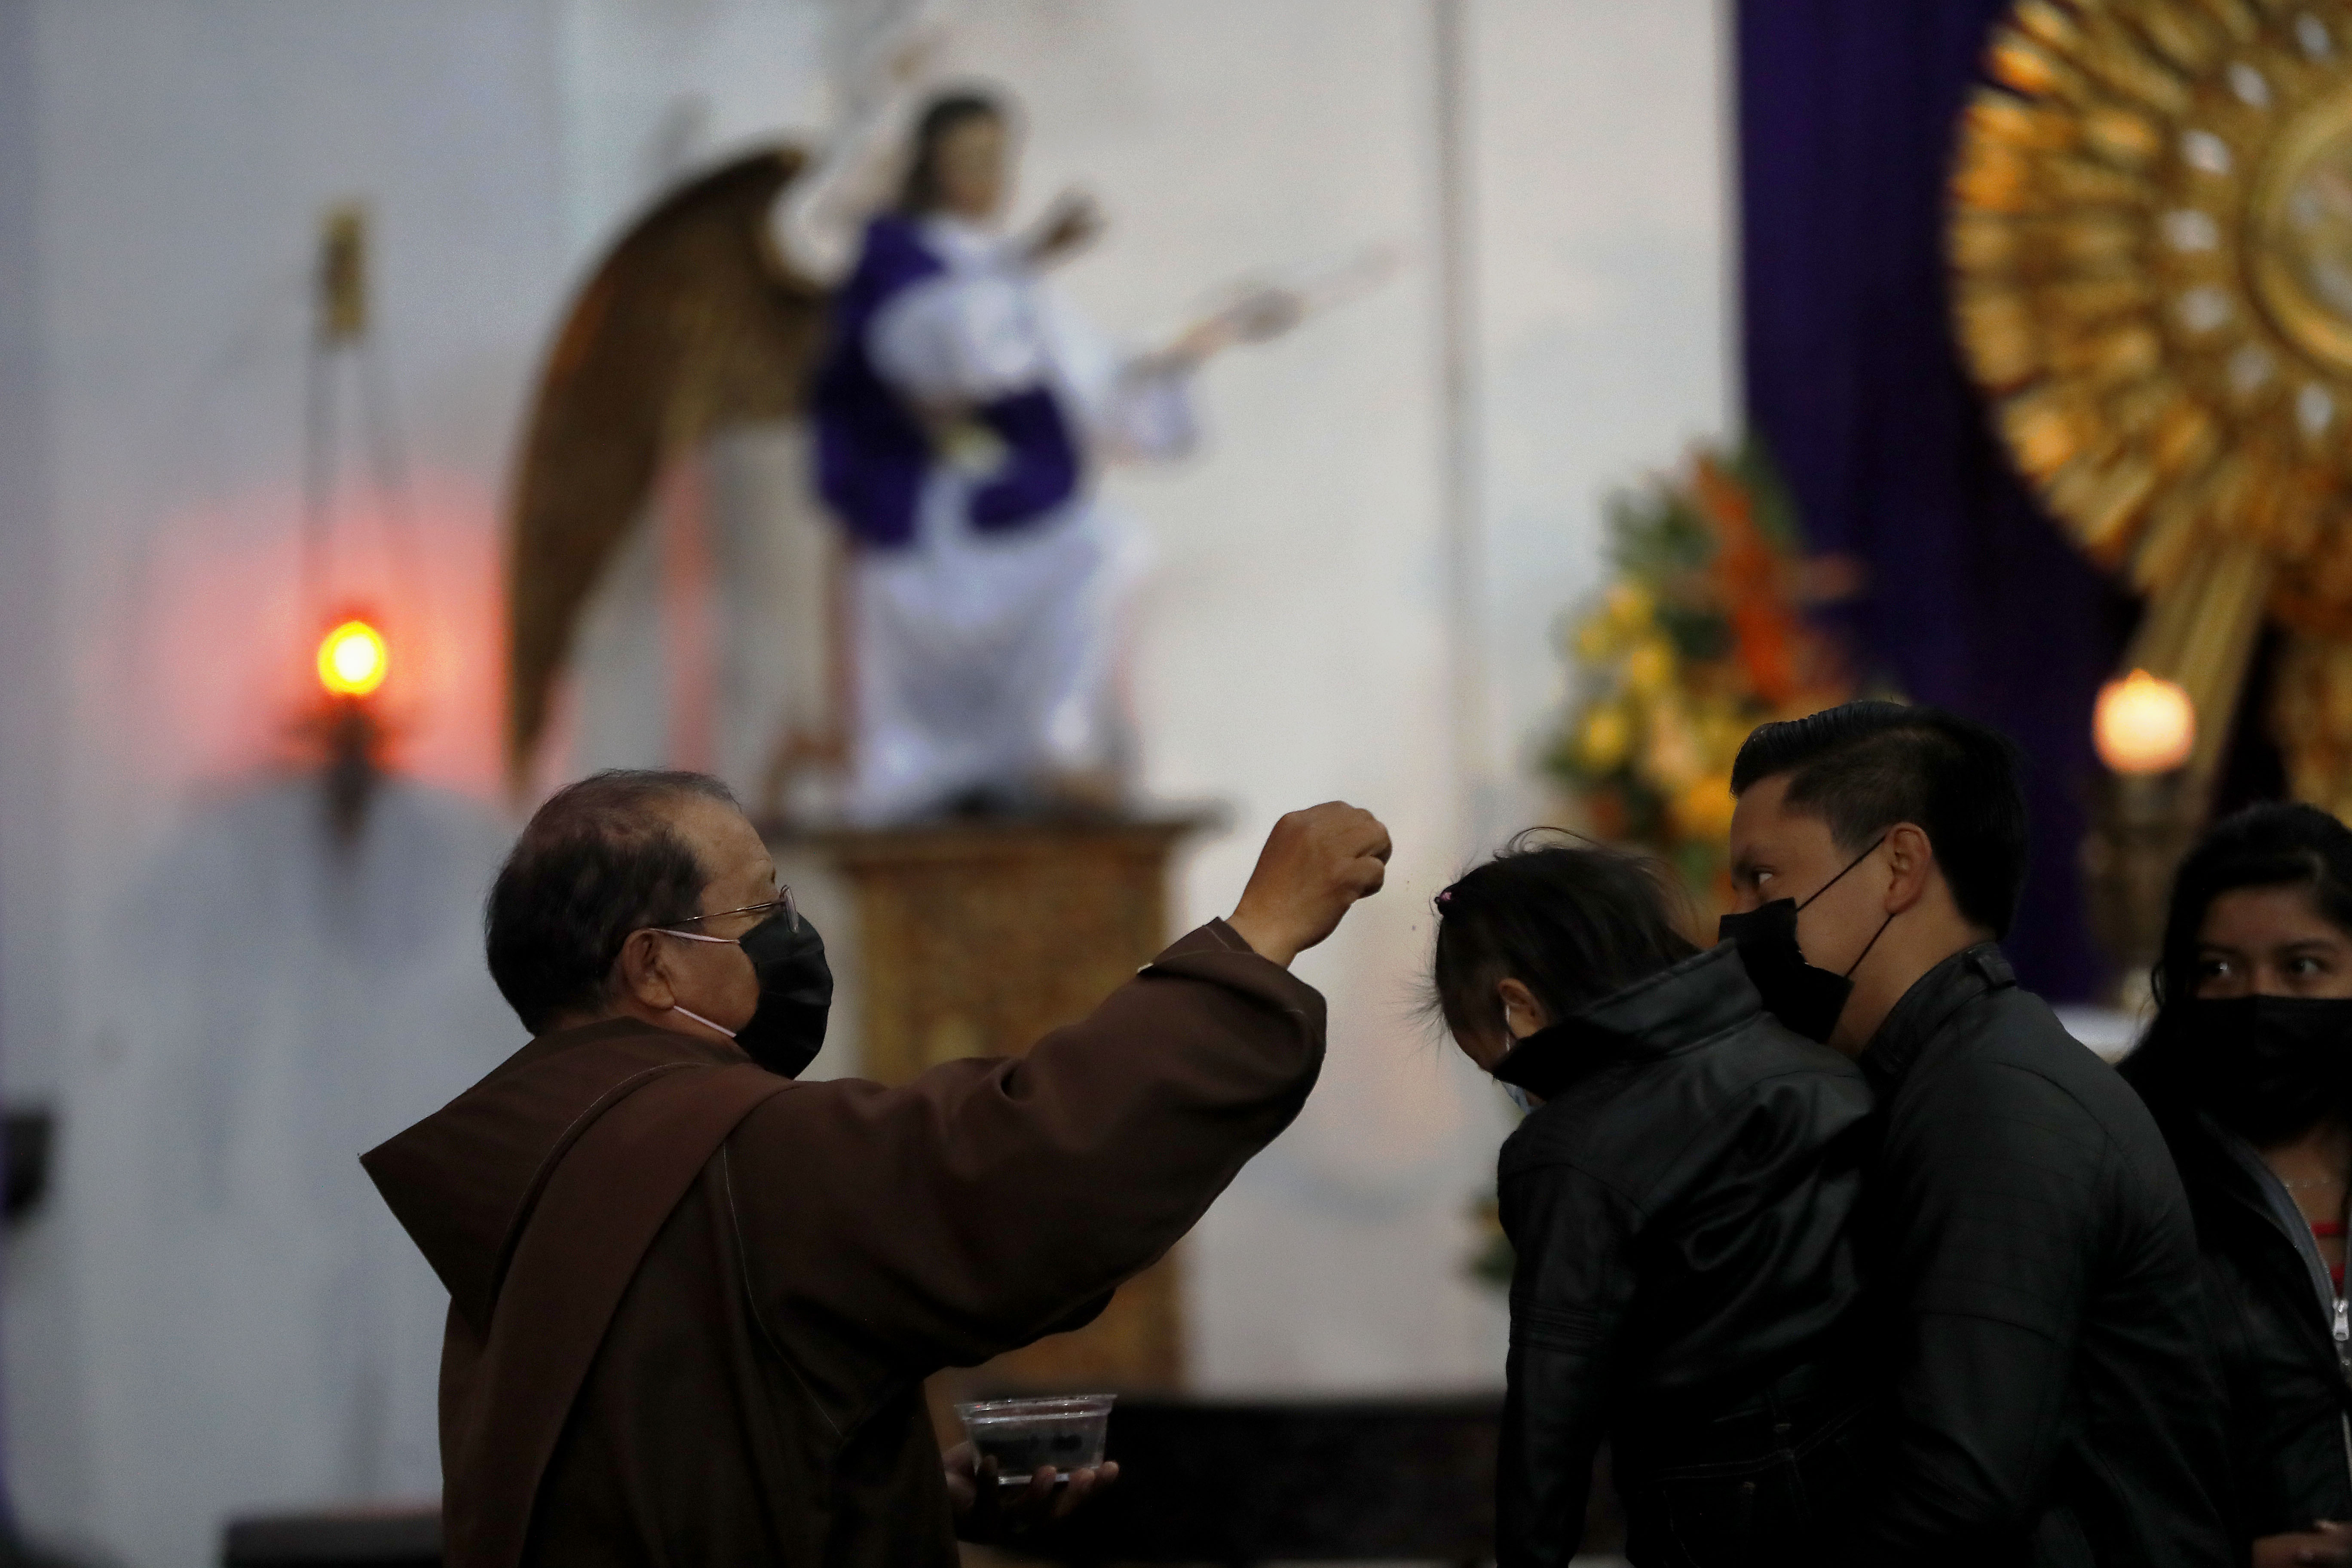 Fieles reciben las cenizas en la cabeza para evitar el contacto con los dedos en la frente por el Covid-19, durante el Miércoles de Ceniza en la iglesia La Merced, Antigua Guatemala. (Foto Prensa Libre: EFE)